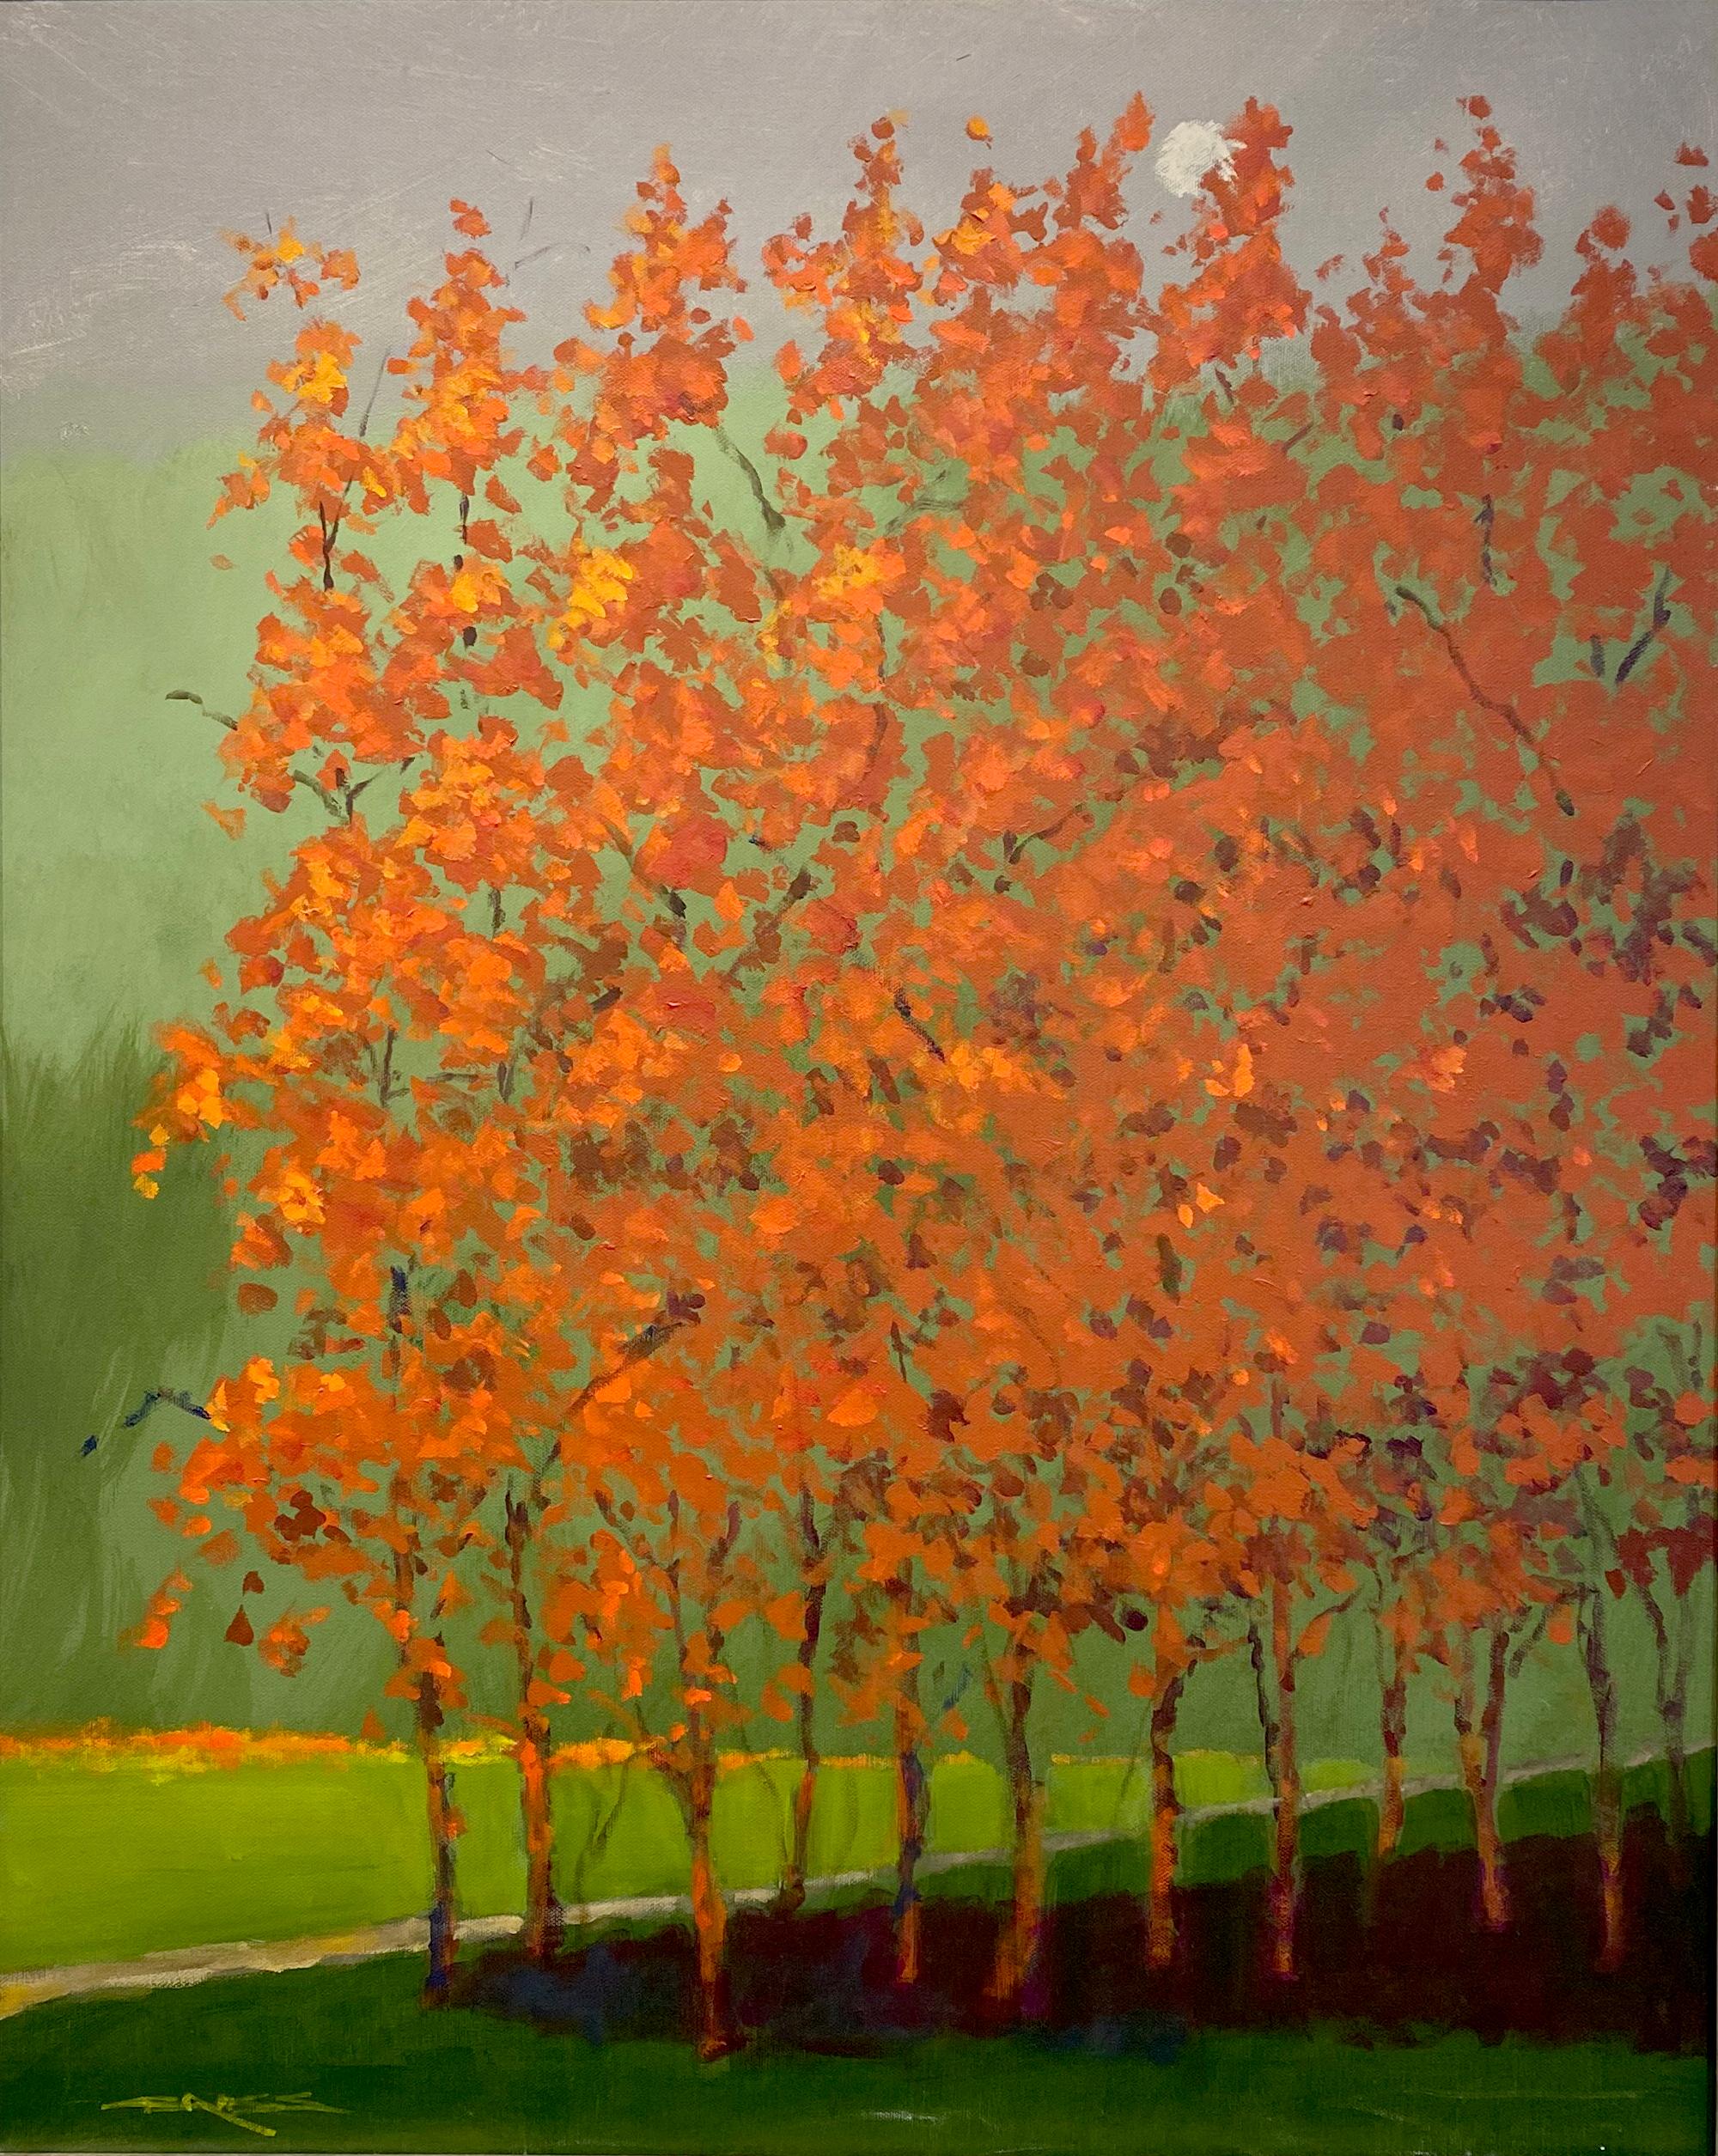 Landscape Painting Charles Emery Ross - « Autumn Night », huile sur toile de paysage forestier contemporain coloré